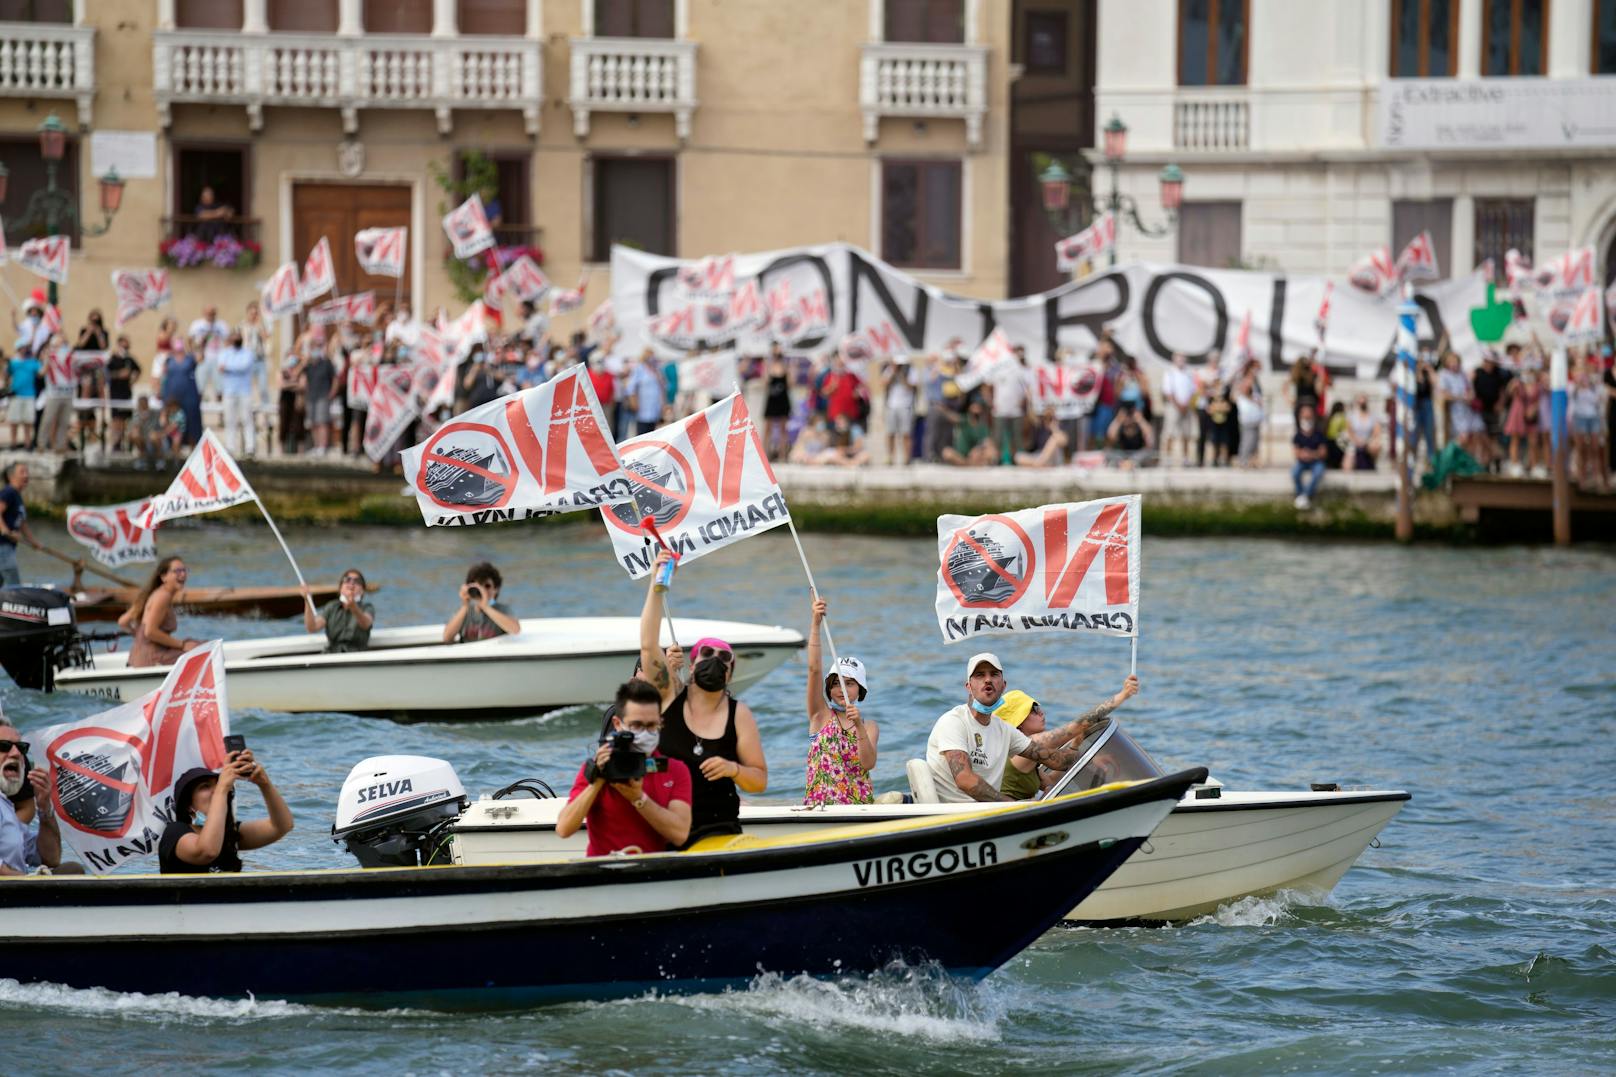 Nach jahrelangen Protesten dürfen große Schiffe vor San Marco und auf dem Giudecca-Kanal ab dem 1. August nicht mehr durchfahren. Archivfoto vom 05. Juni 2021.